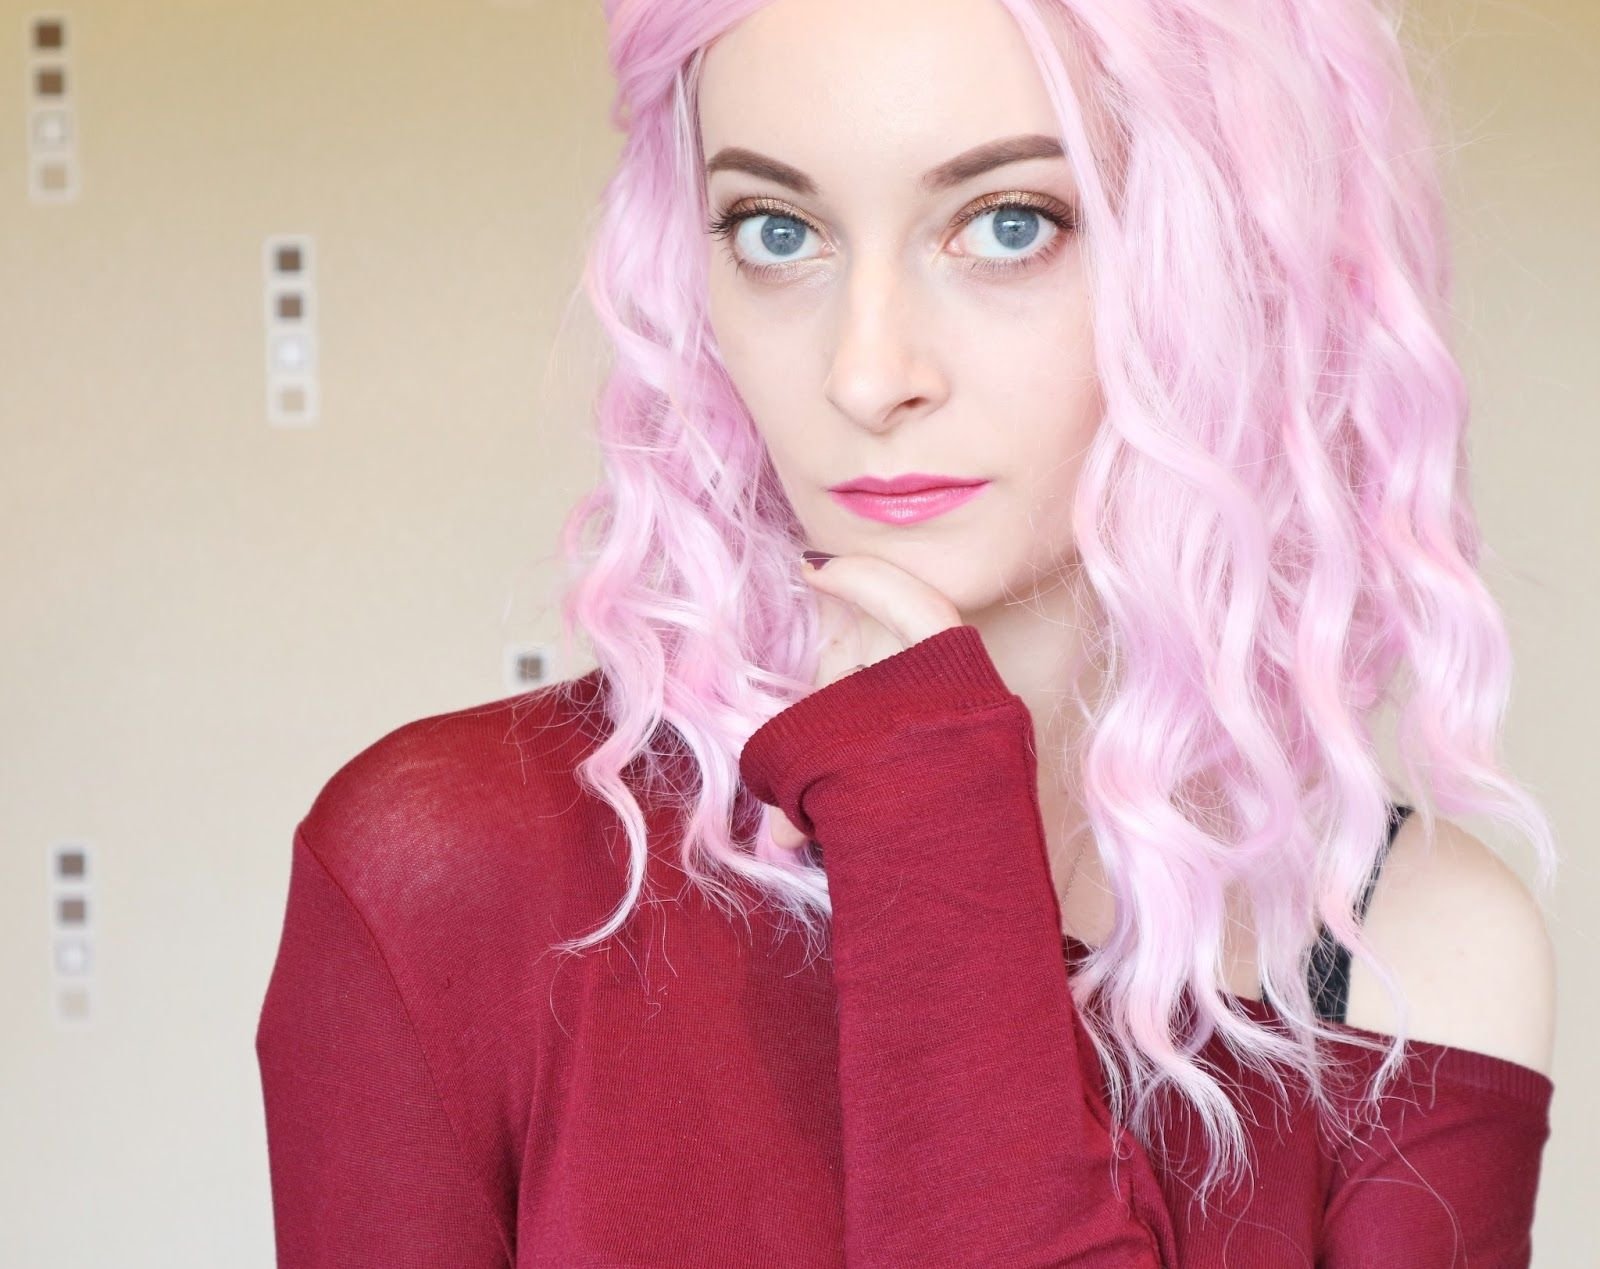 Костюм с розовыми волосами. Розовые волосы. Знаменитости с розовыми волосами. Блогеры с розовыми волосами. Образ с розовыми волосами.